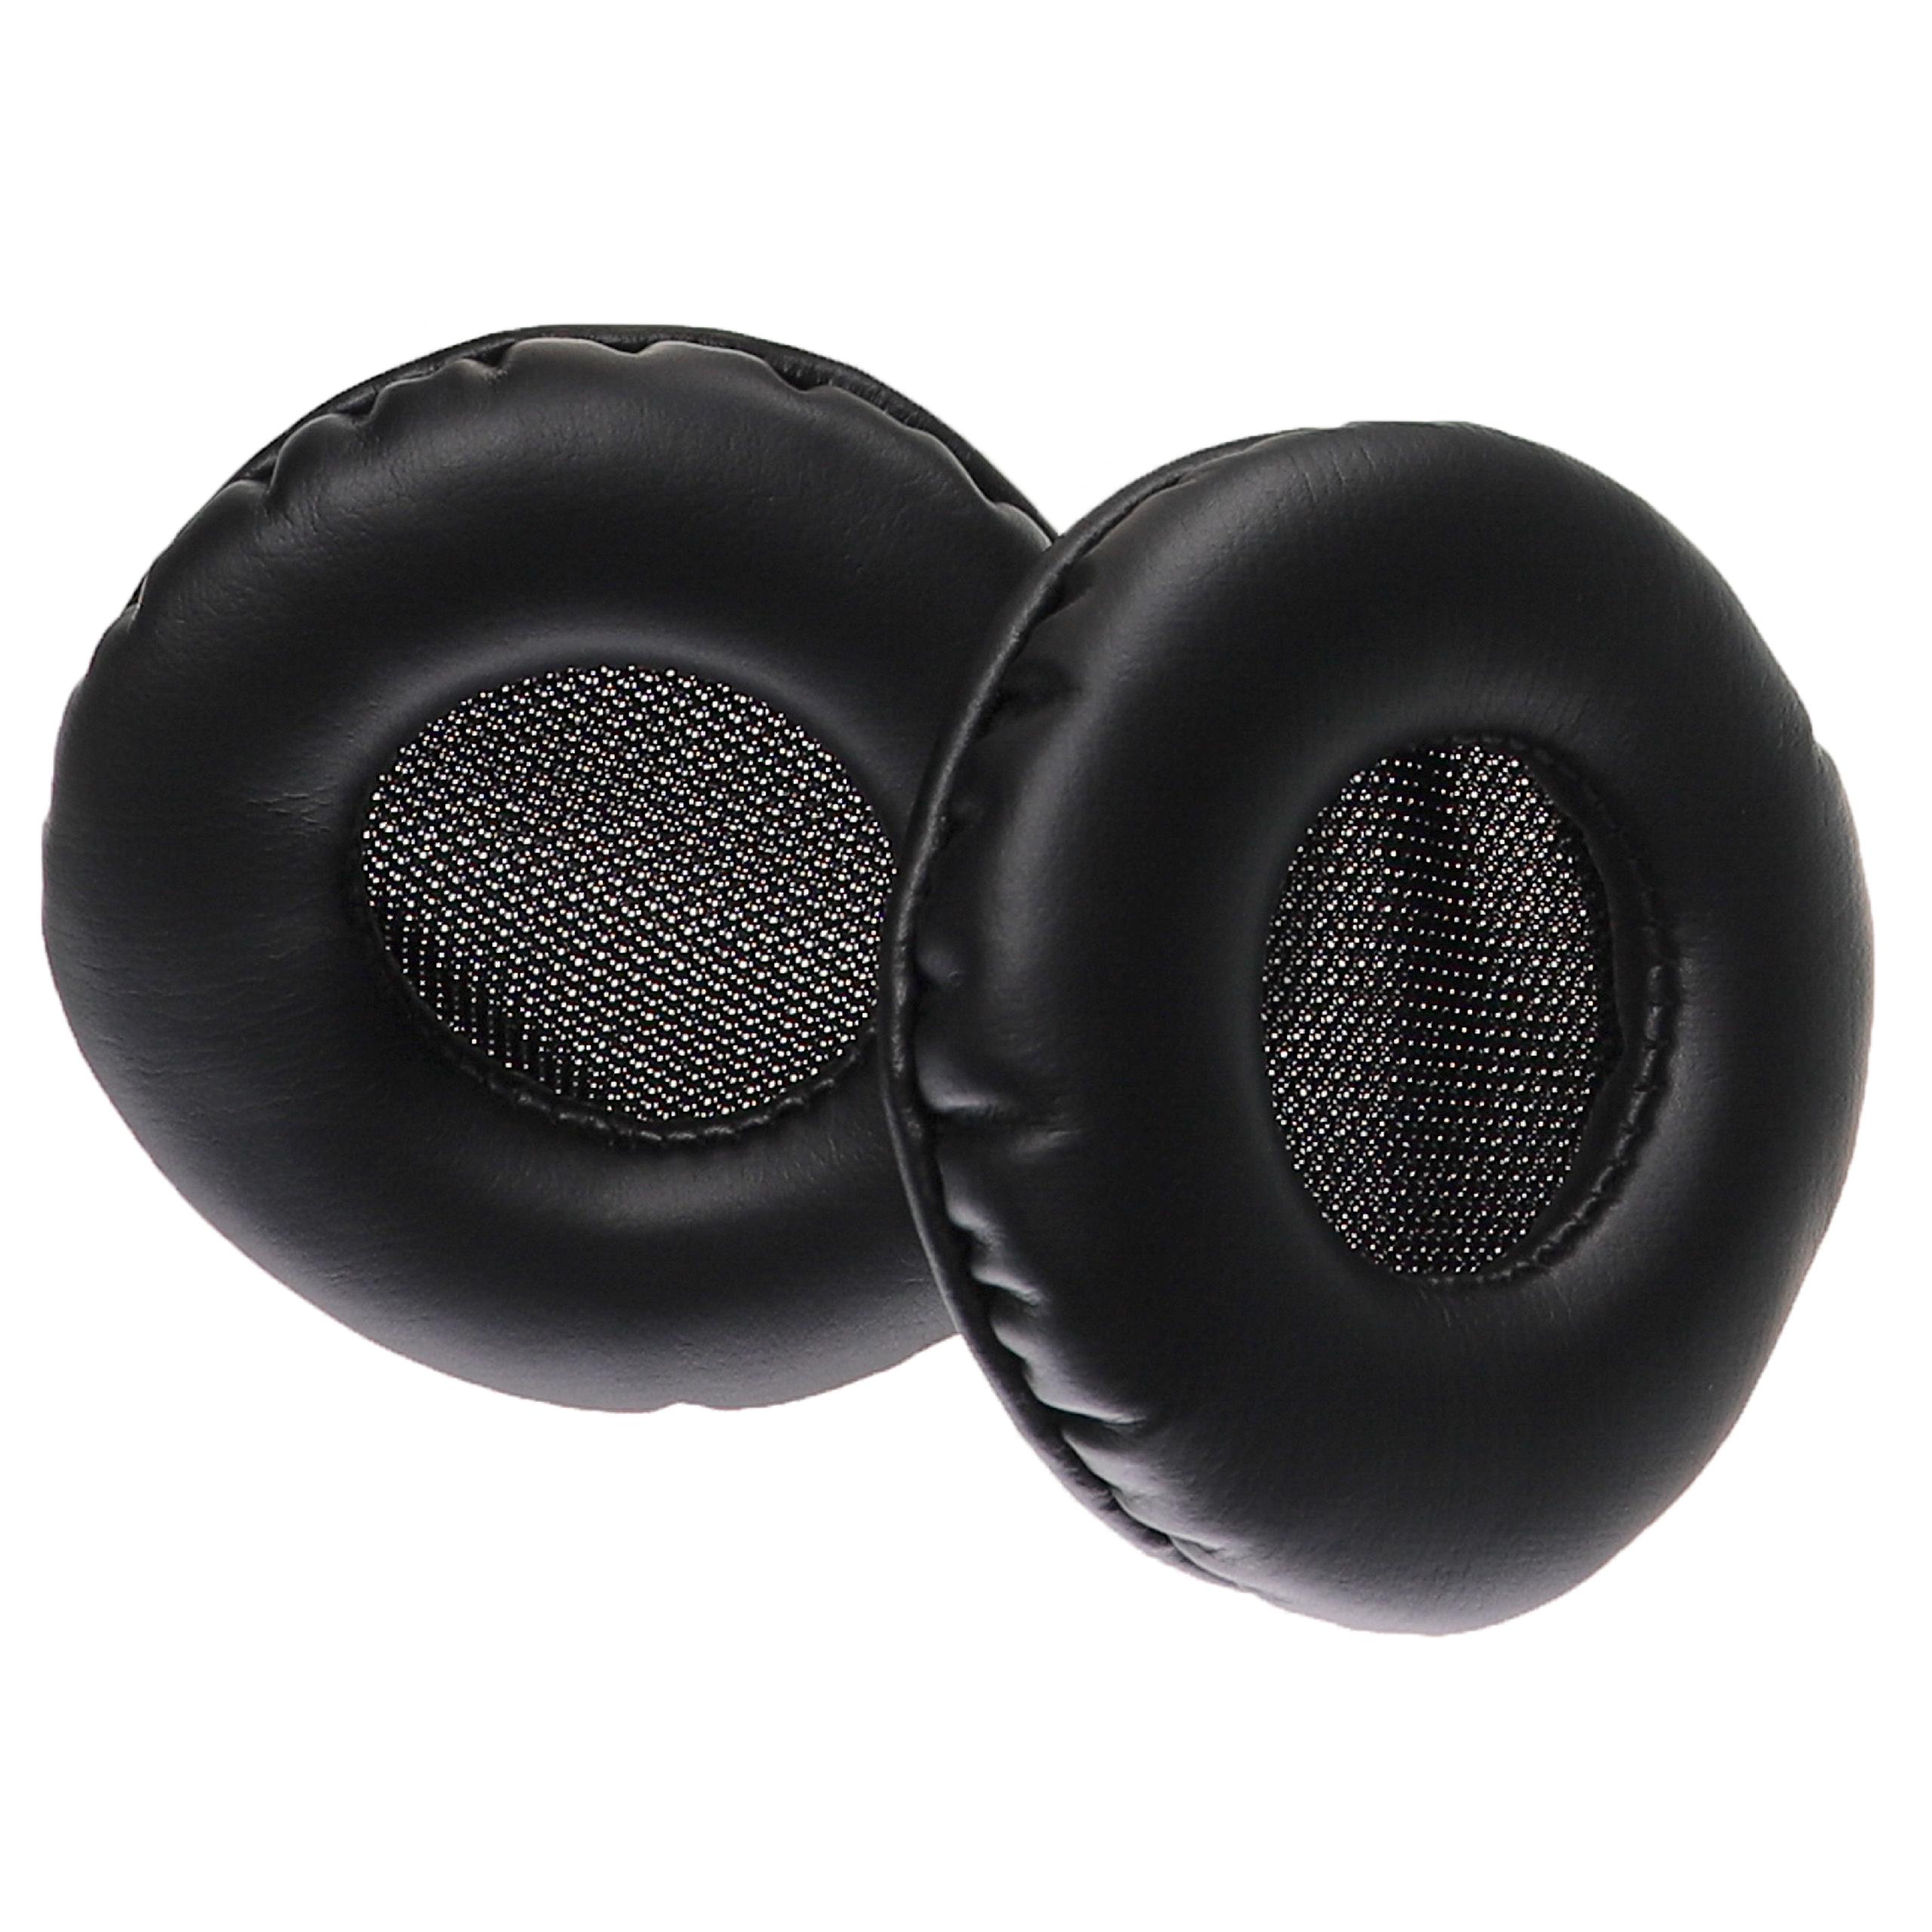 Poduszki do słuchawek MDR-V100 - pady, grub. 36 mm, czarny